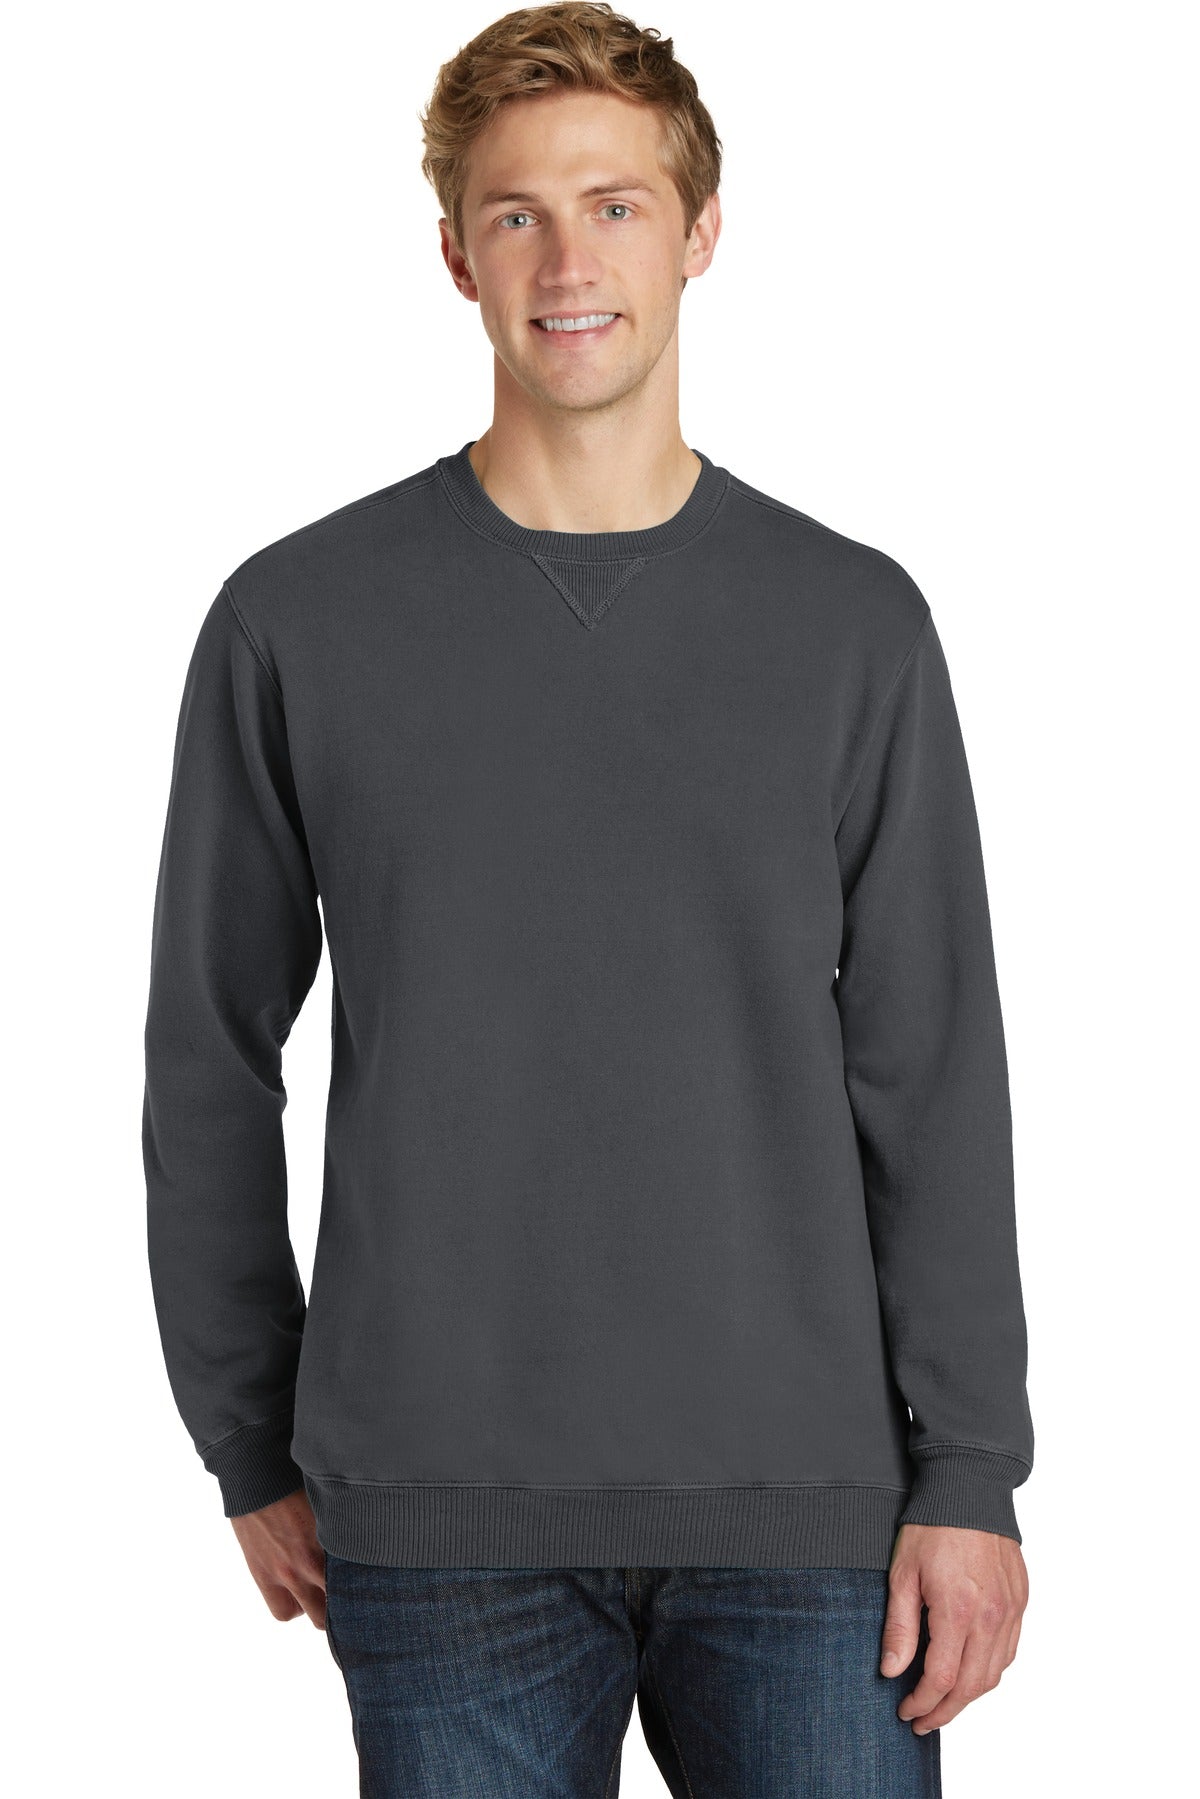 Sweatshirts/Fleece Coal Port & Company